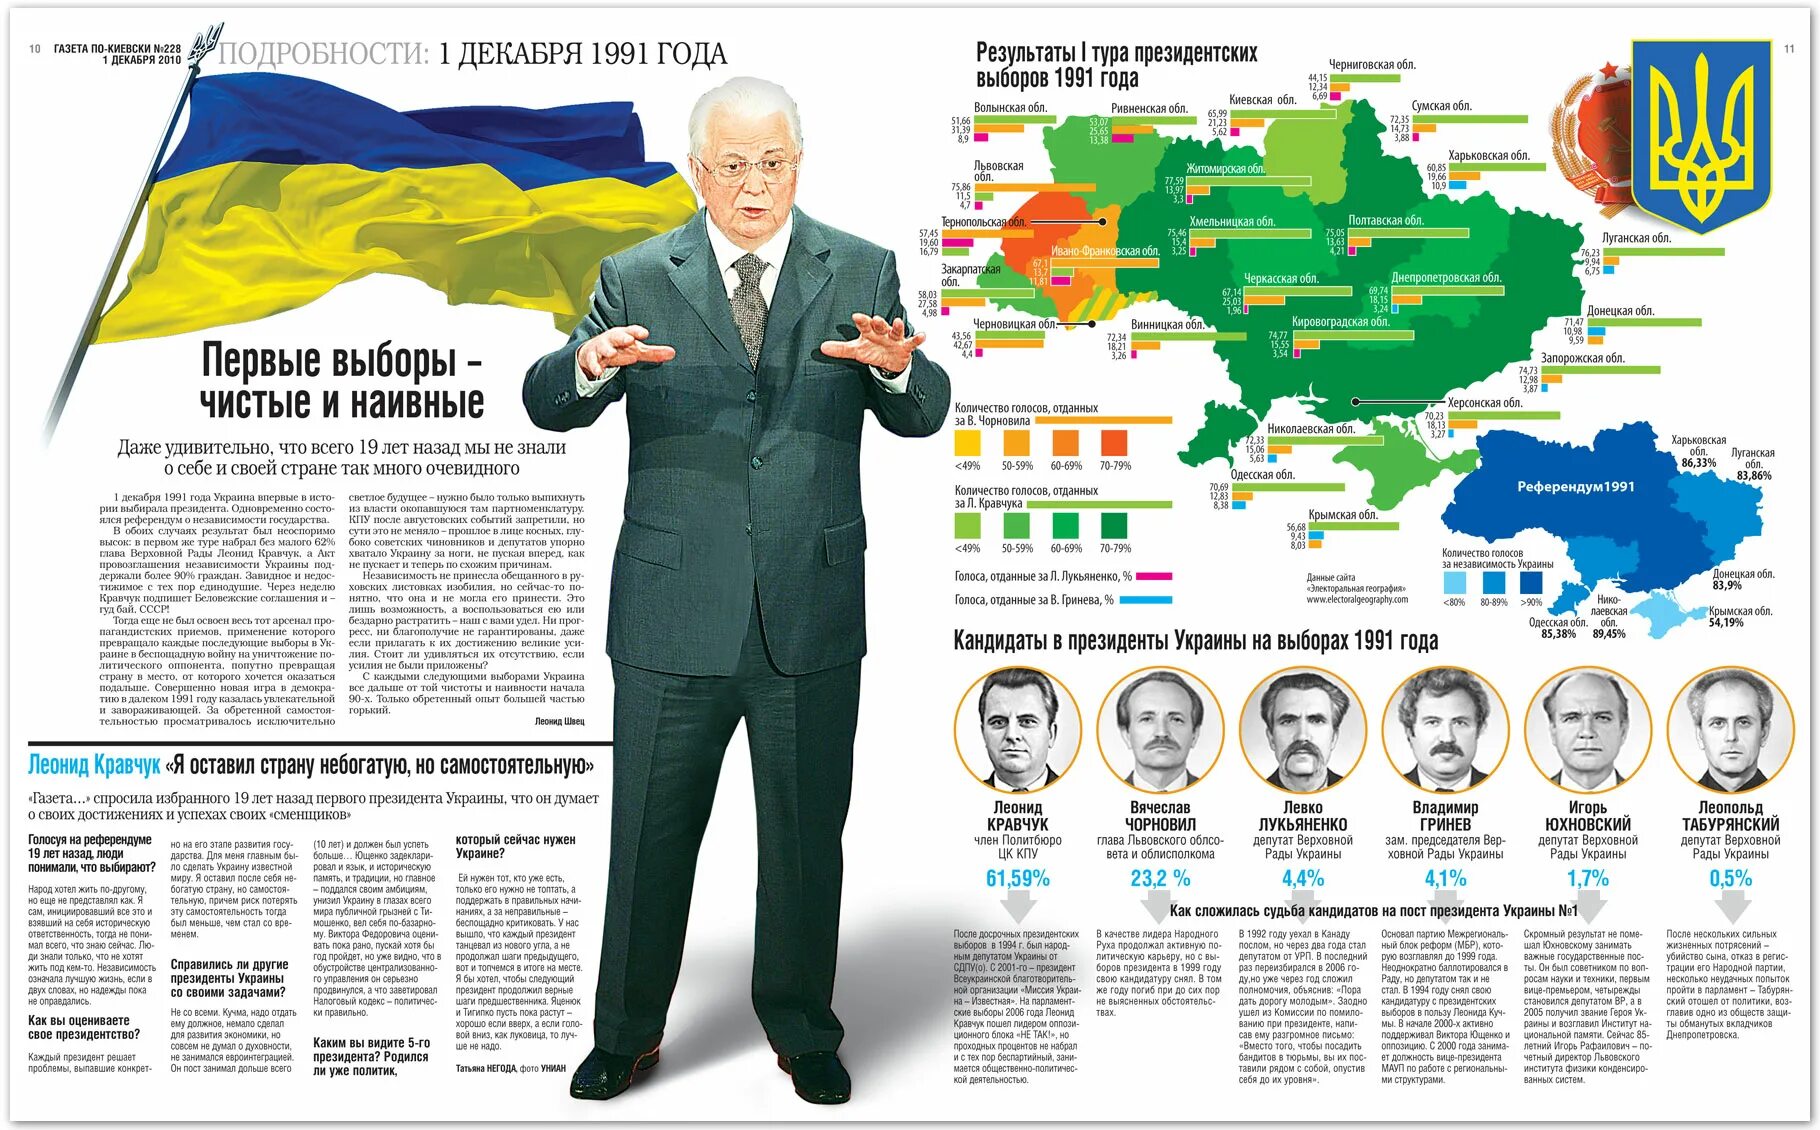 Какой была украина в 1991 году. Украина 1991 год. Granitsy urainy 1991 goda. Выборы президента Украины 1991. 1991 Год Украина Украина.